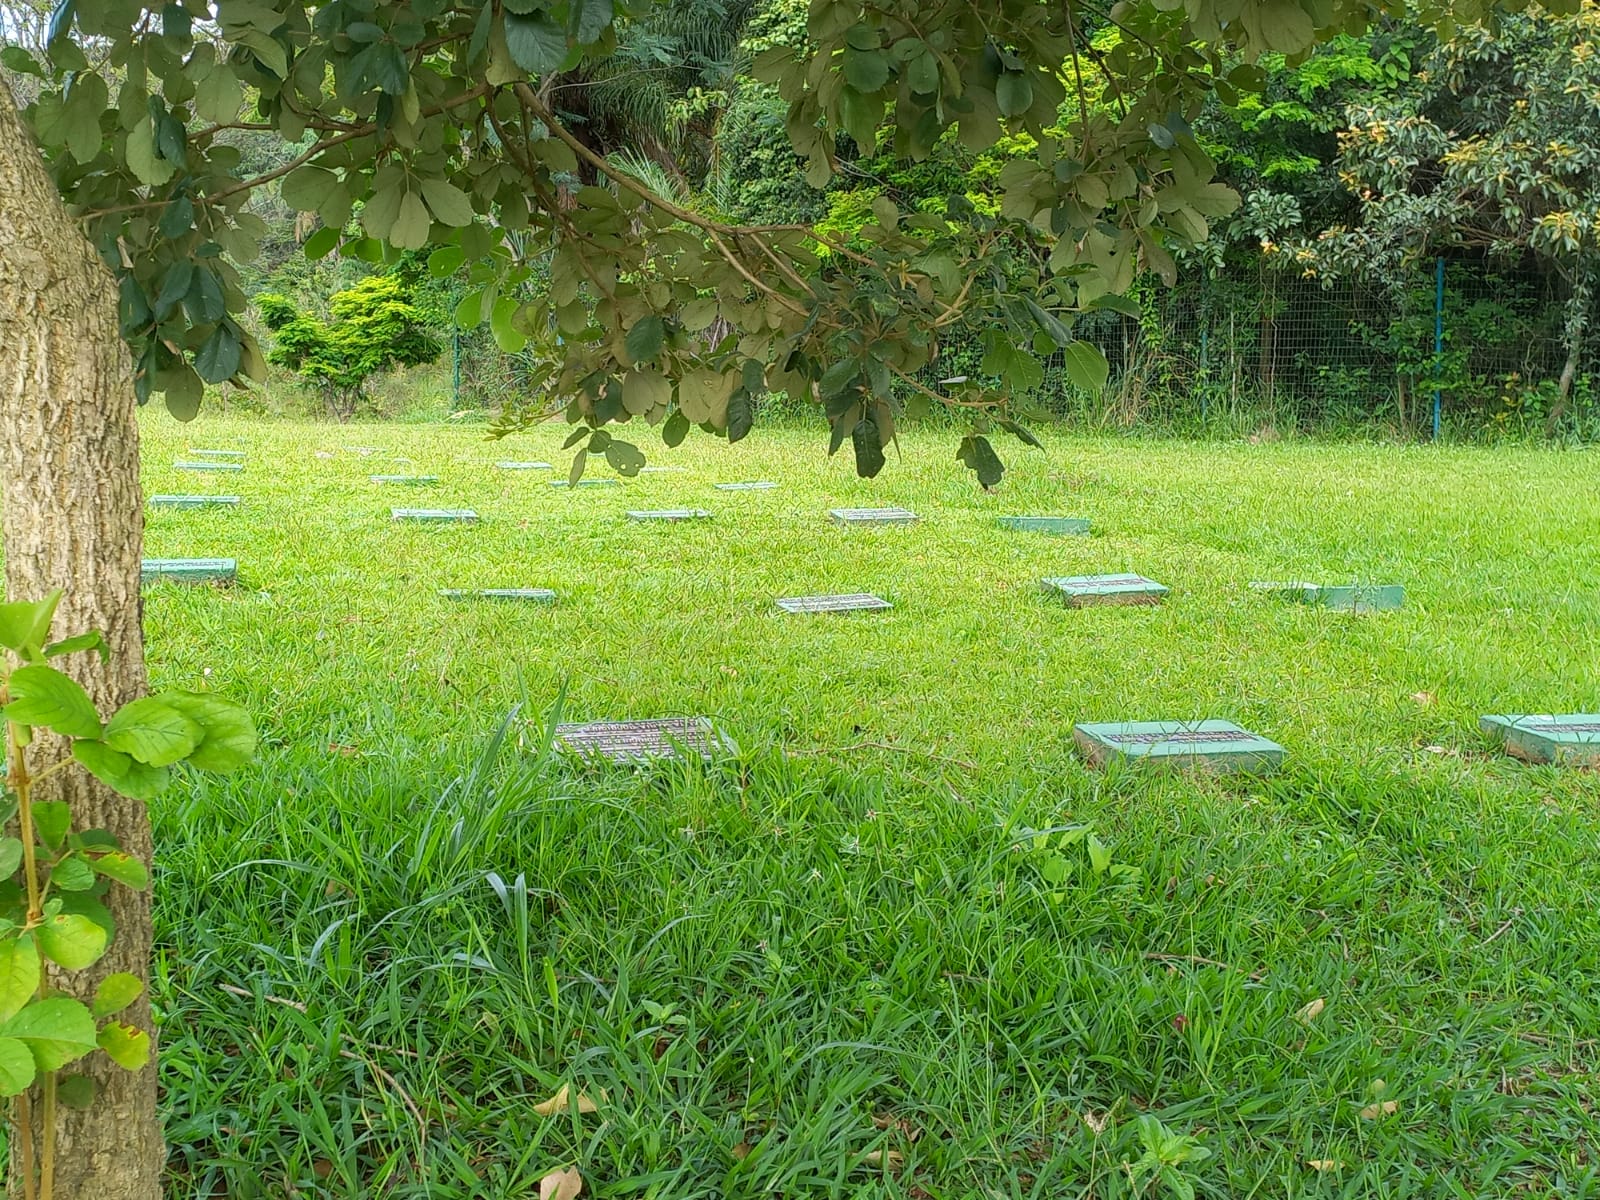 na foto vemos alguns túmulos em uma área verde